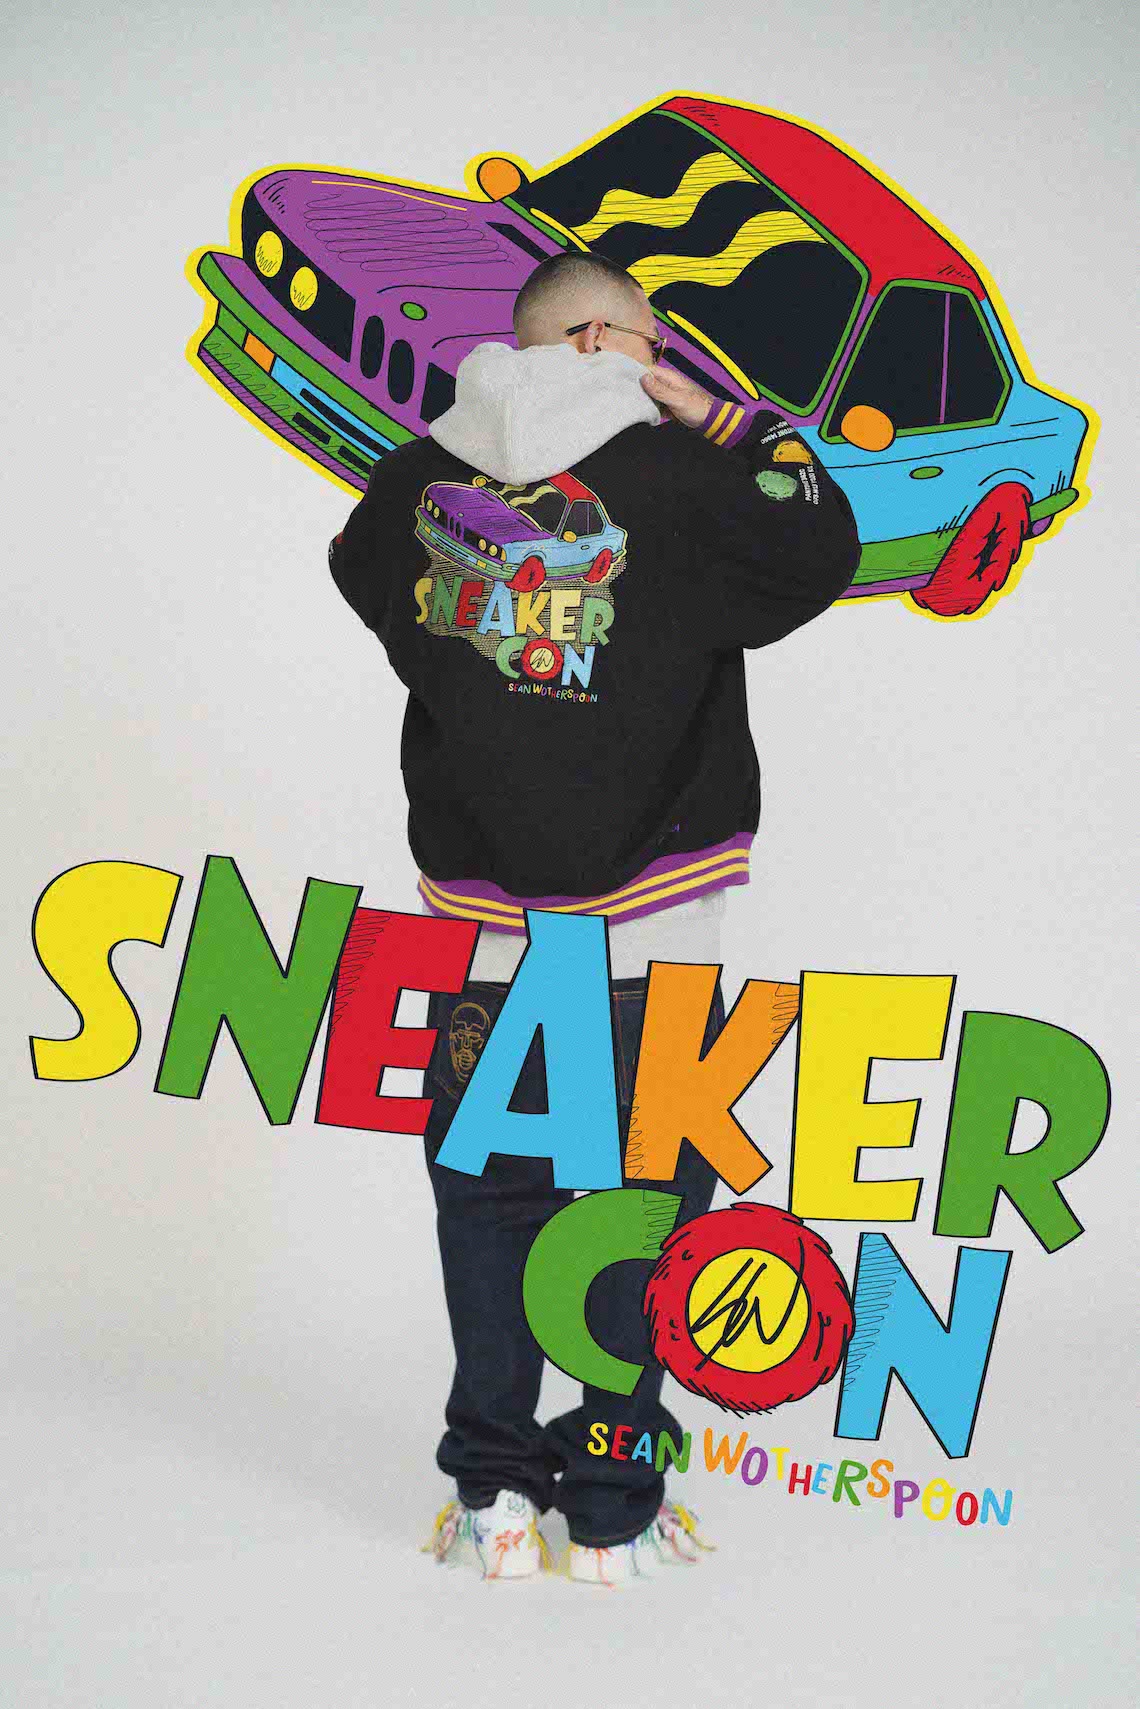 Sneaker Con Shanghai 2020 18